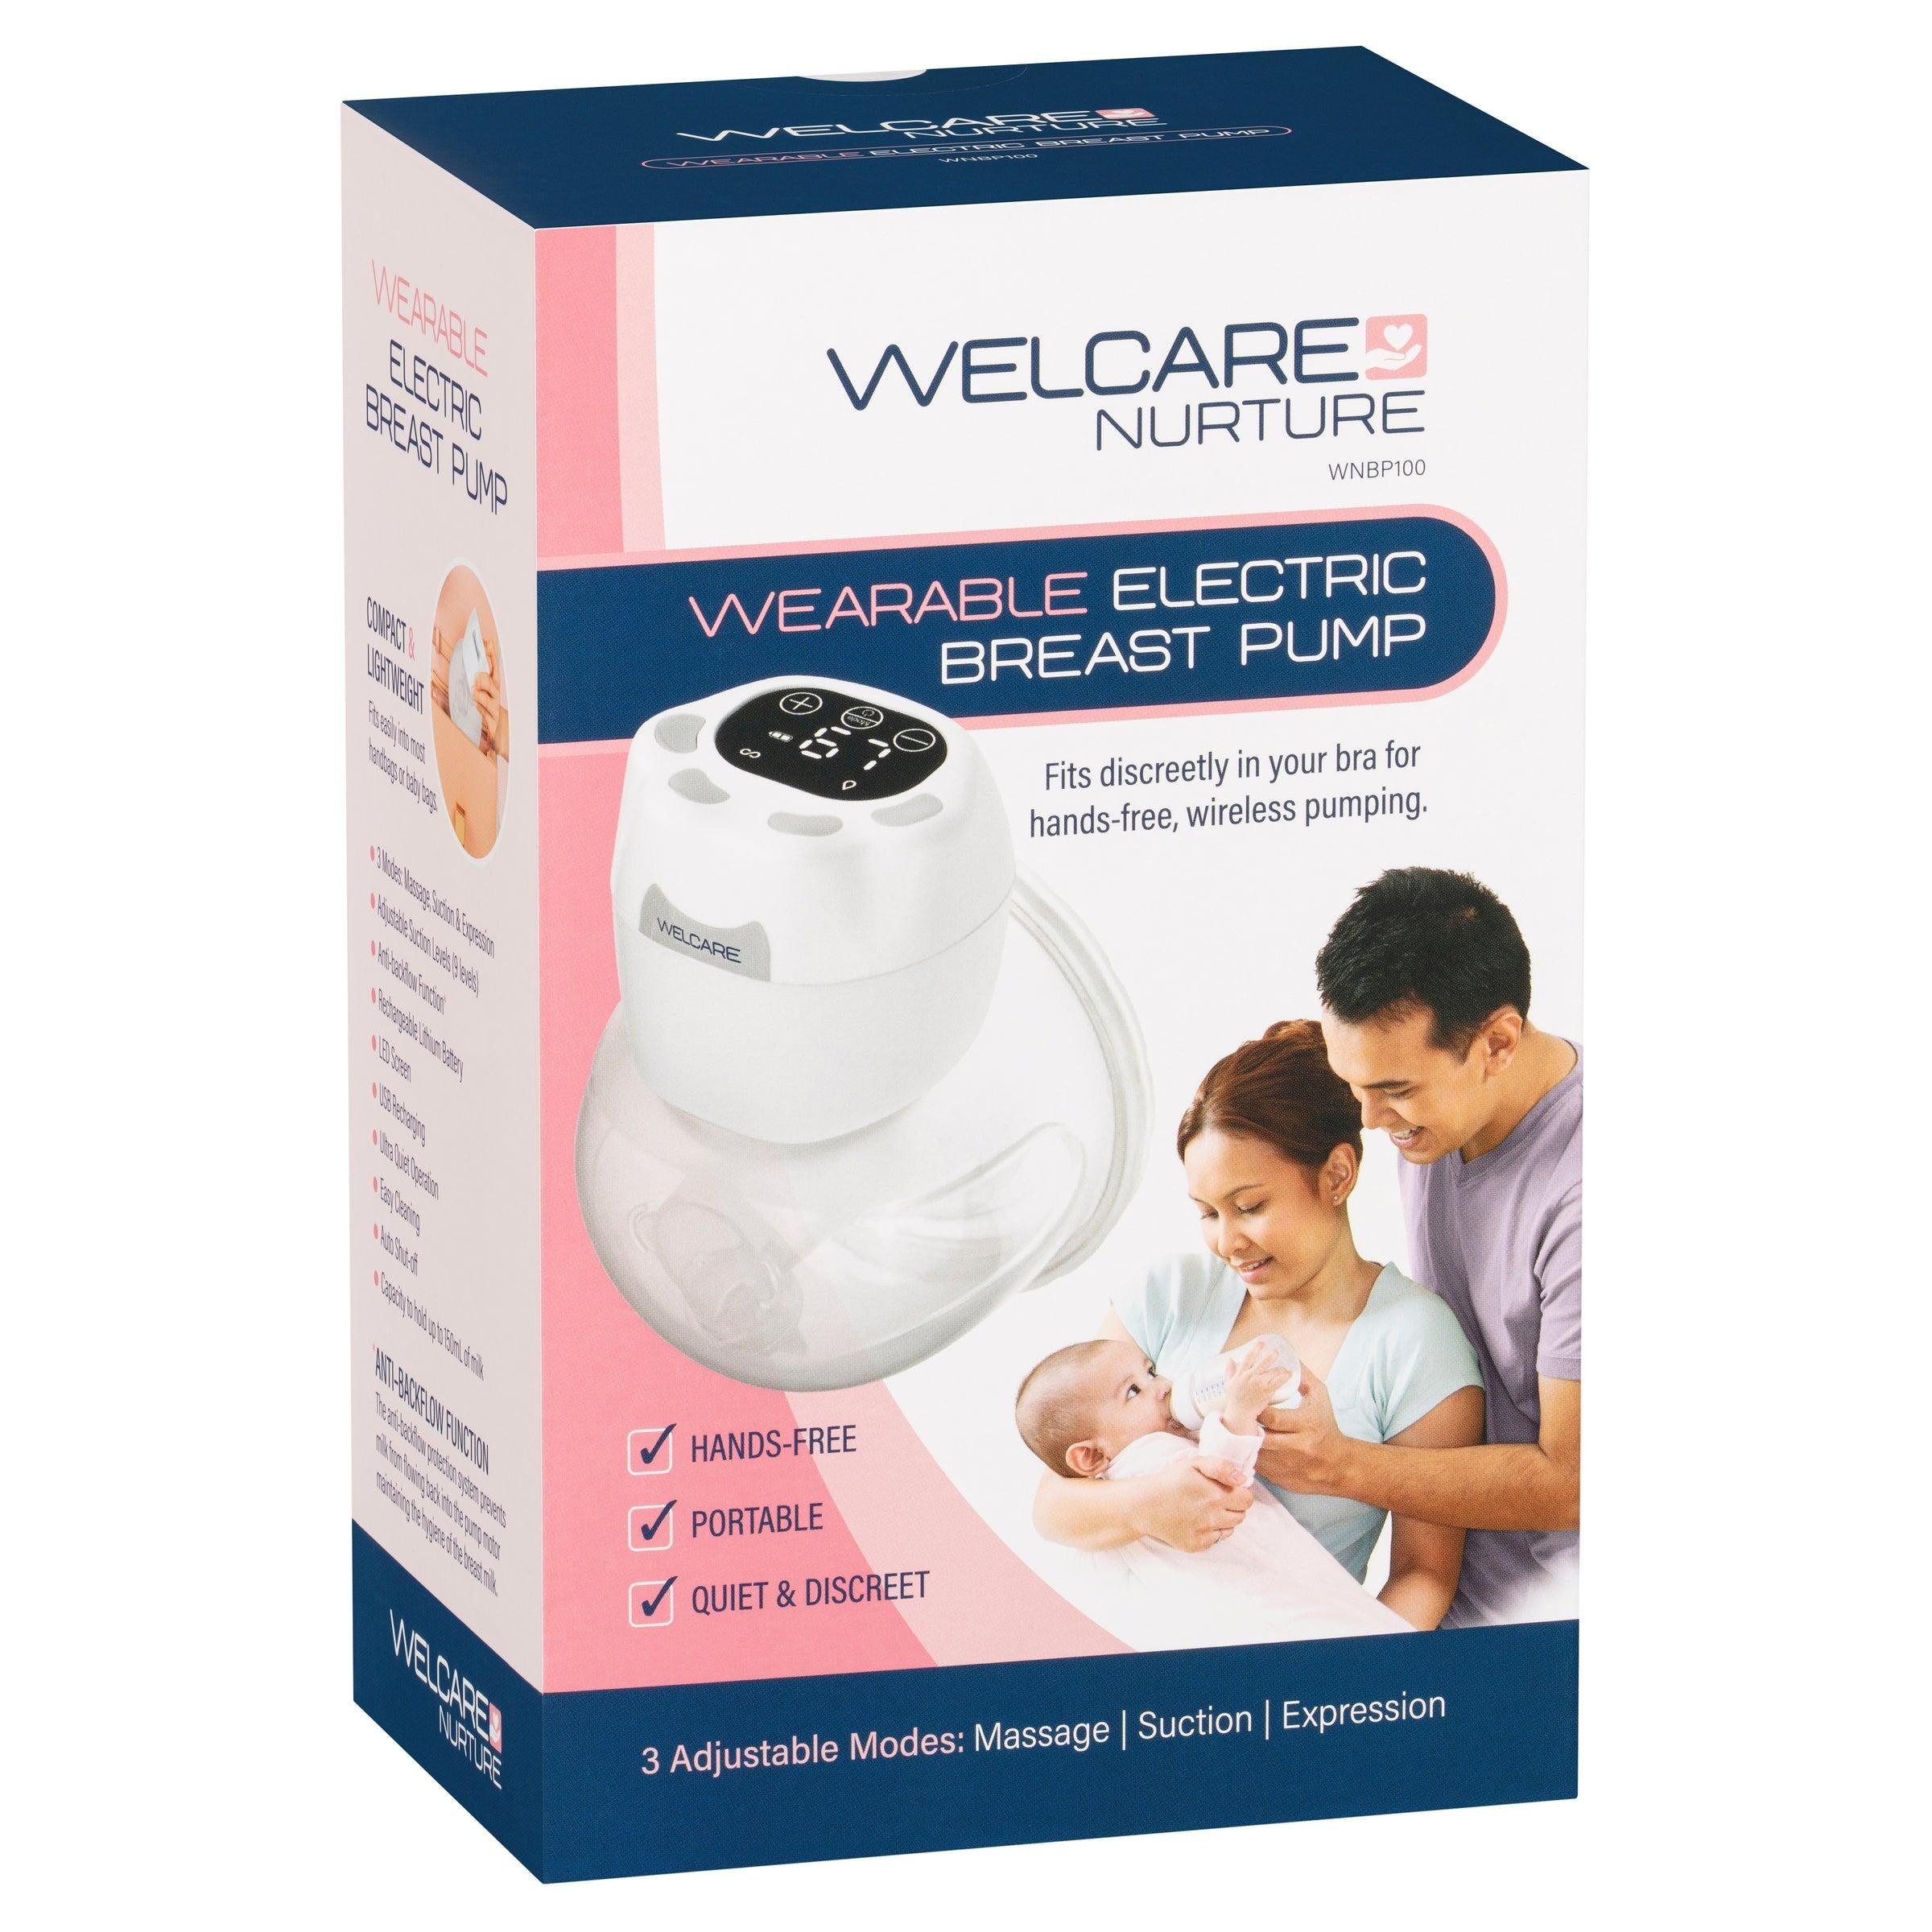 http://www.netpharmacy.co.nz/cdn/shop/files/welcare-nurture-wearable-electric-breast-pump.jpg?v=1700530940